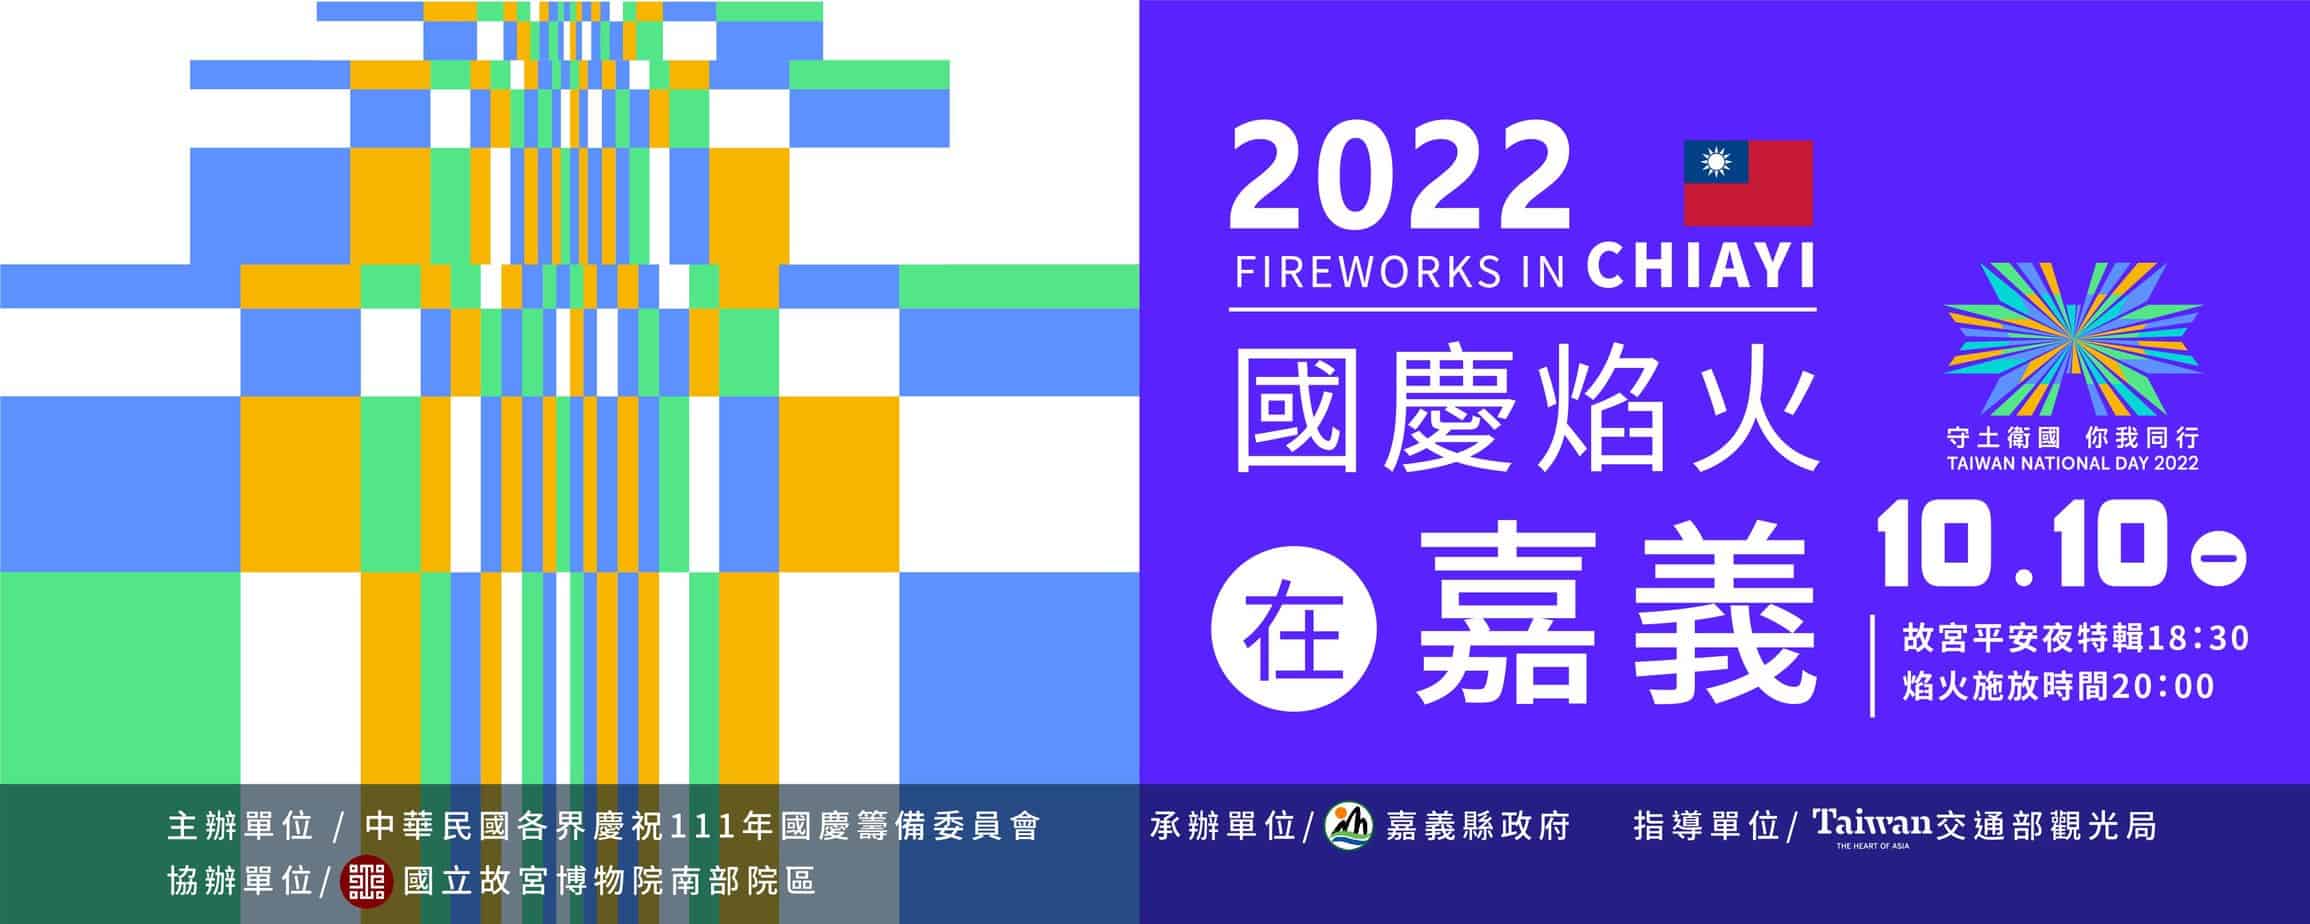 2022嘉義國慶煙火